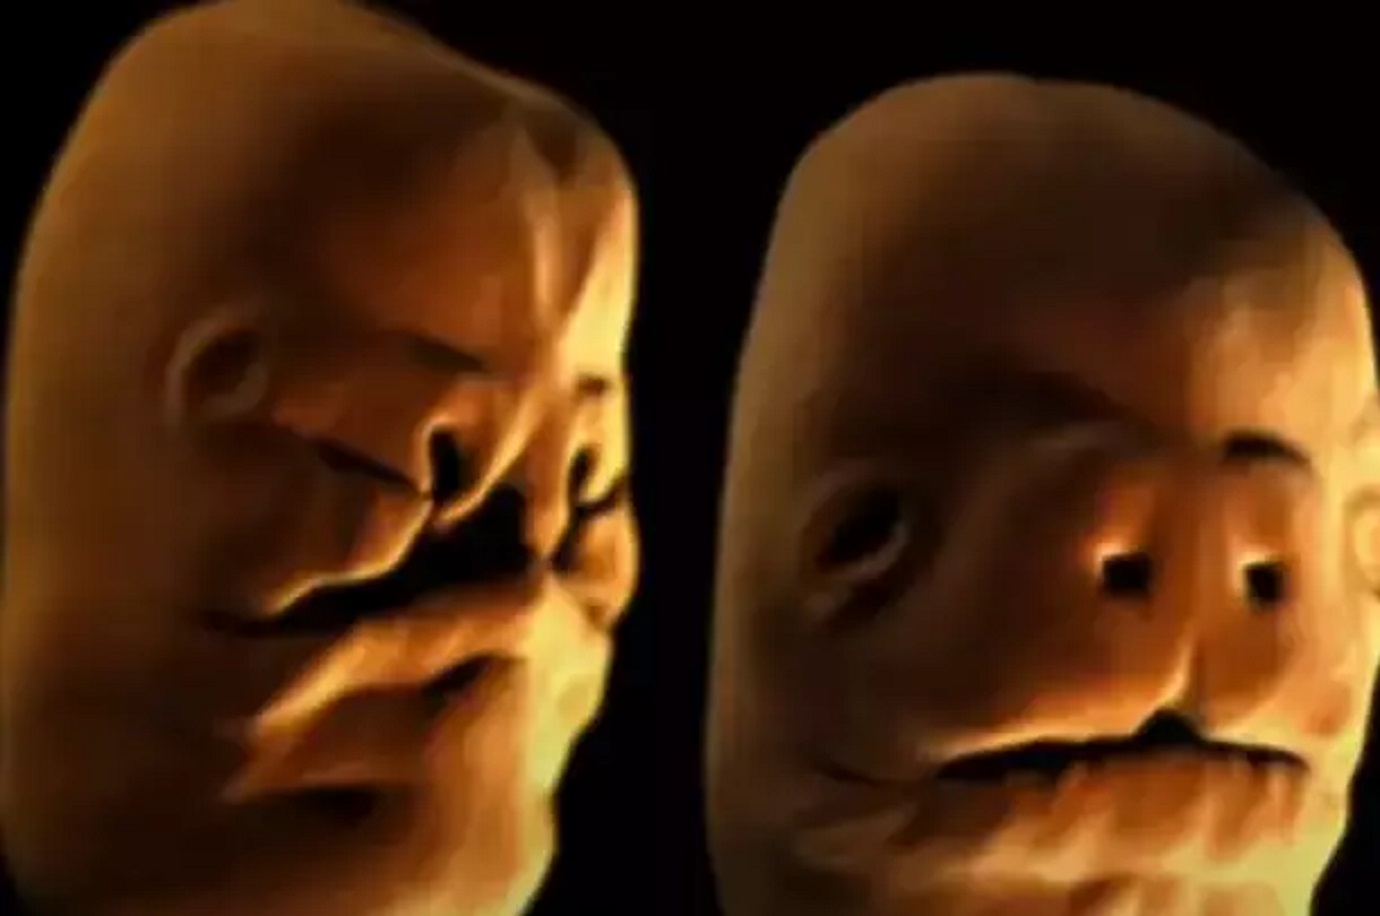 simulacija-razvoja-bebina-lica-u-maternici-izgleda-kao-horor:-mnogi-se-nisu-usudili-pogledati-do-kraja